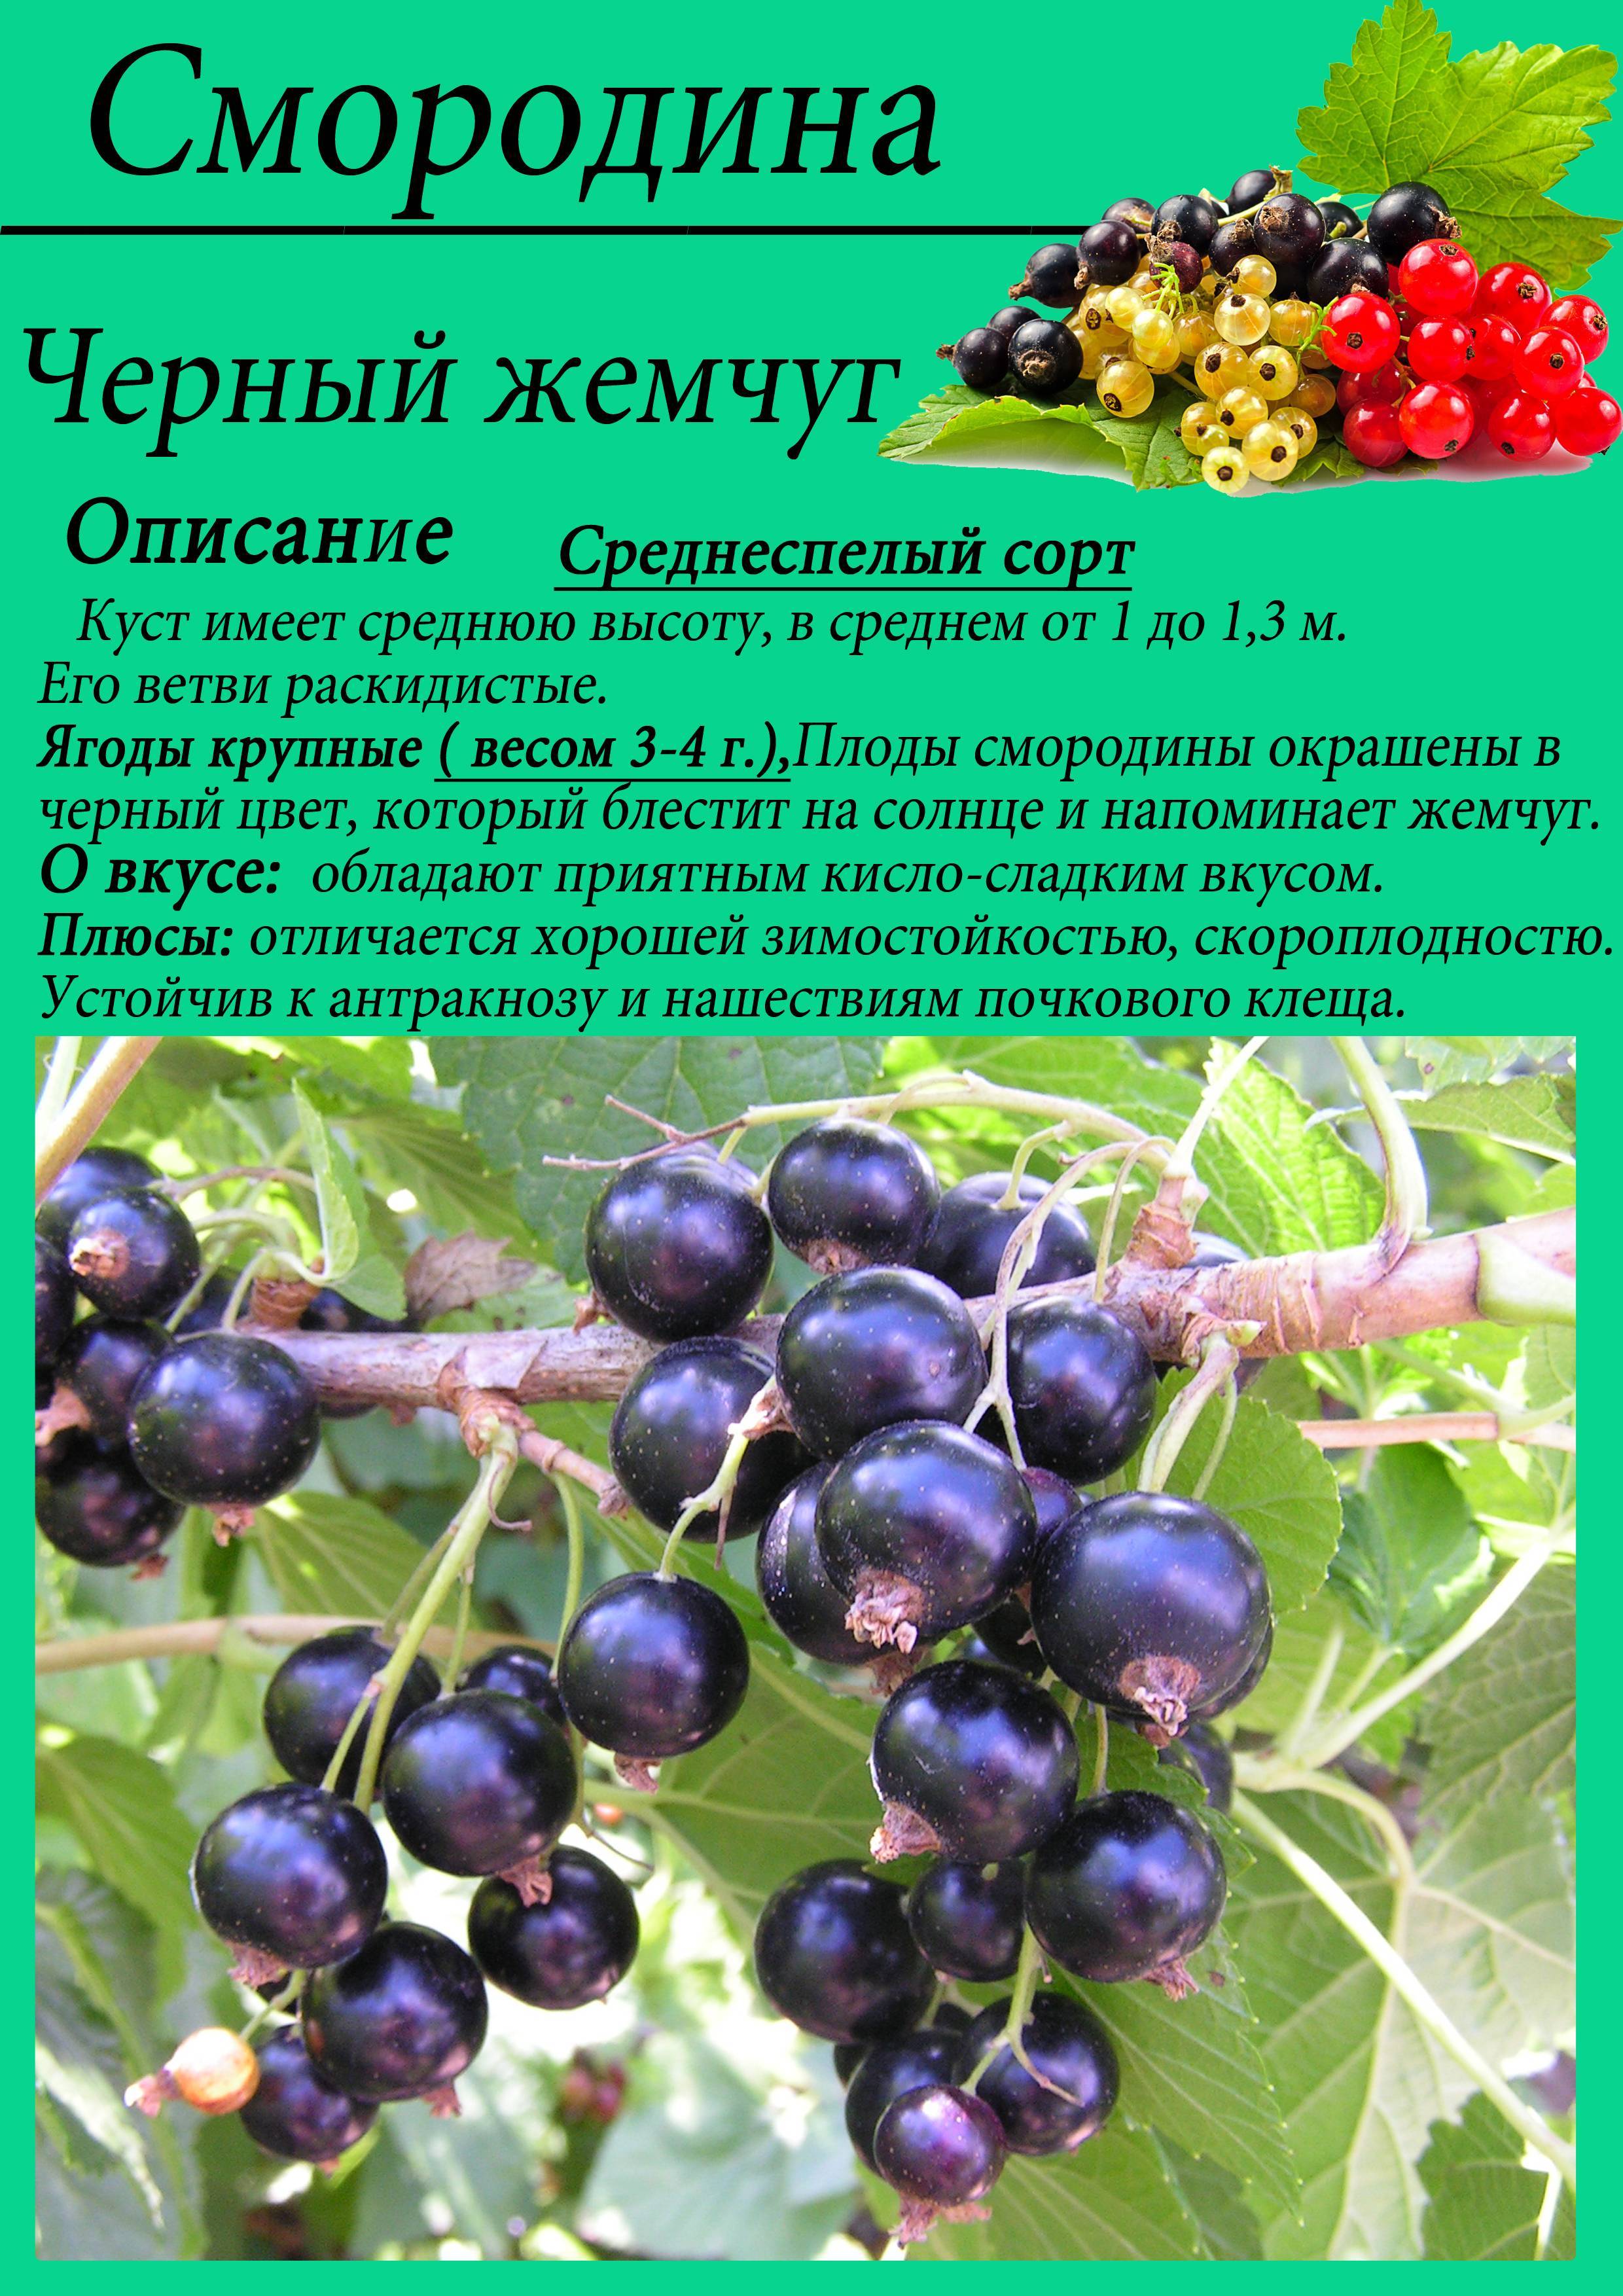 Купить смородина чёрная белорусская сладкая в минске - описание, отзывы